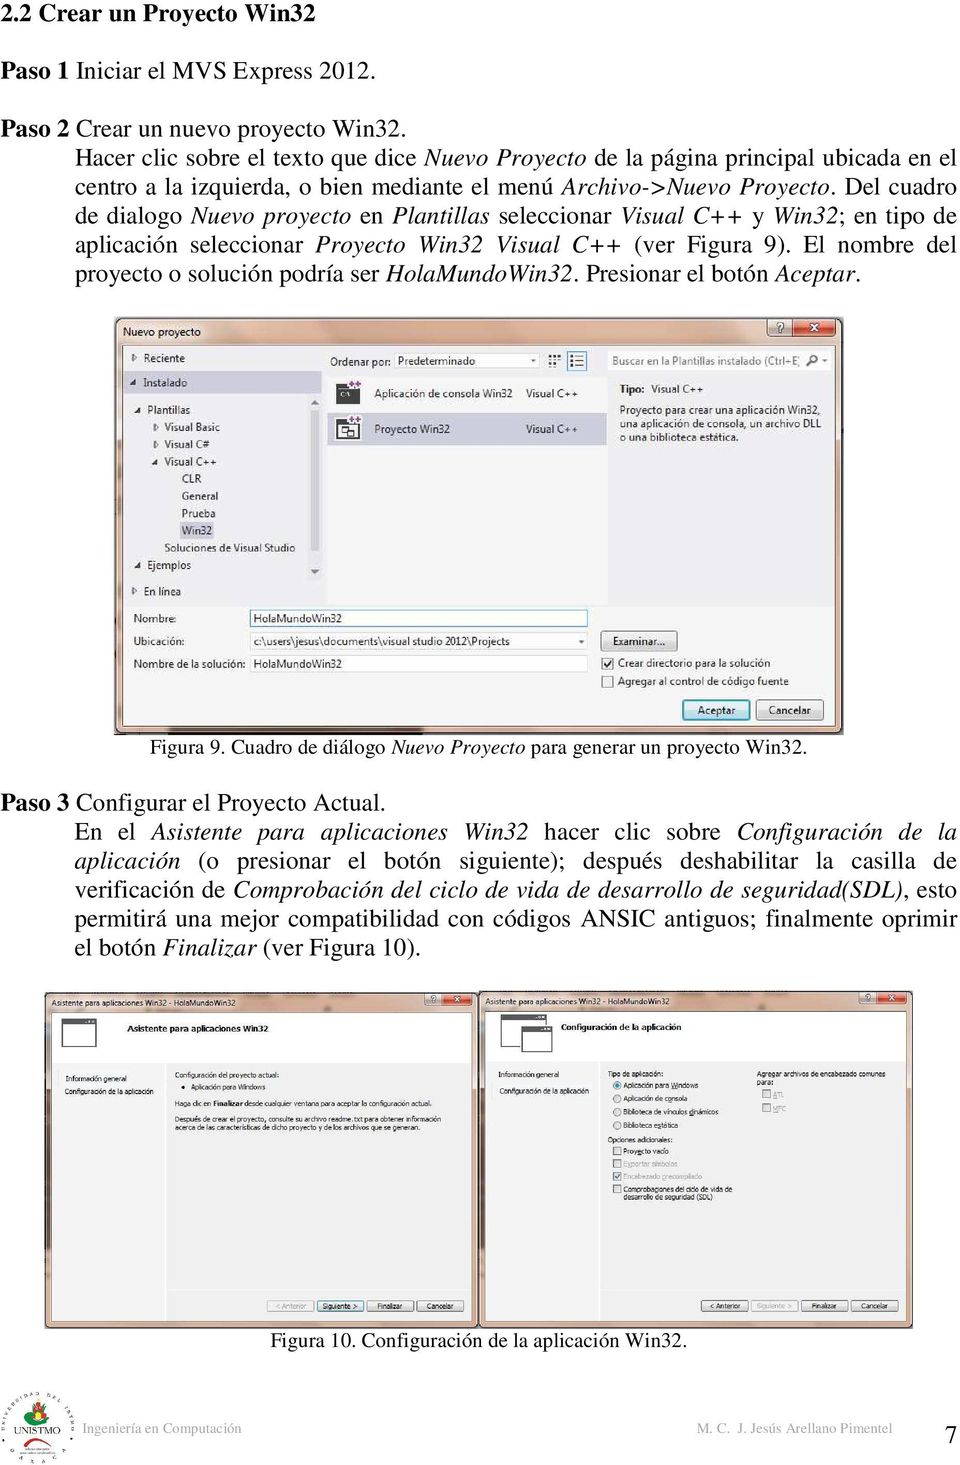 Del cuadro de dialogo Nuevo proyecto en Plantillas seleccionar Visual C++ y Win32; en tipo de aplicación seleccionar Proyecto Win32 Visual C++ (ver Figura 9).